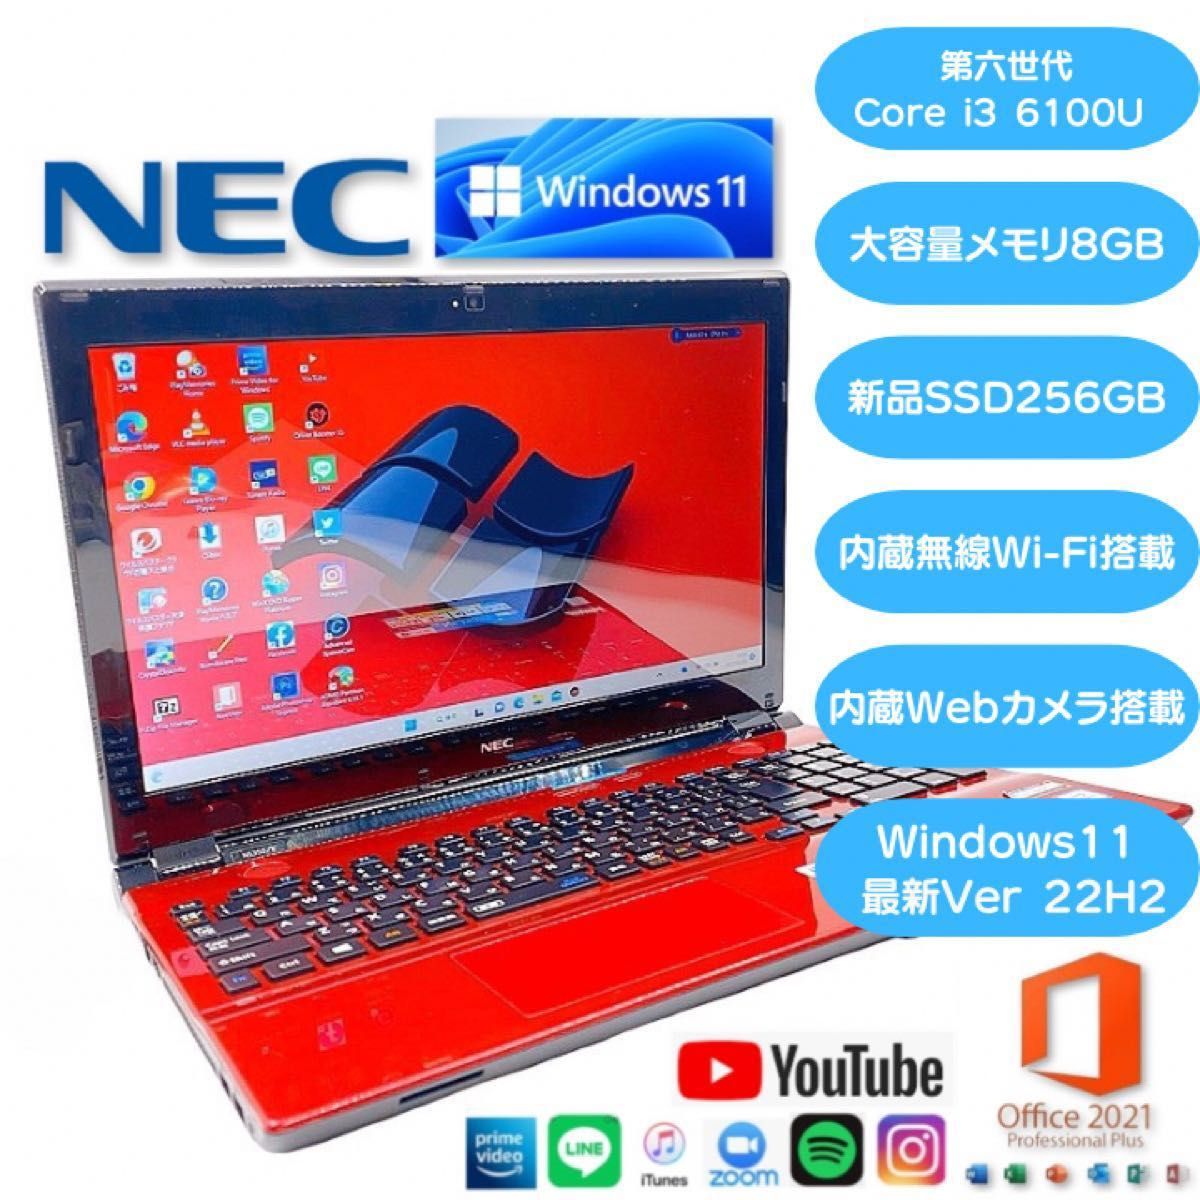 最新OS Windows11】ノートパソコン NEC NS350/E レッド メモリ8GB SSD